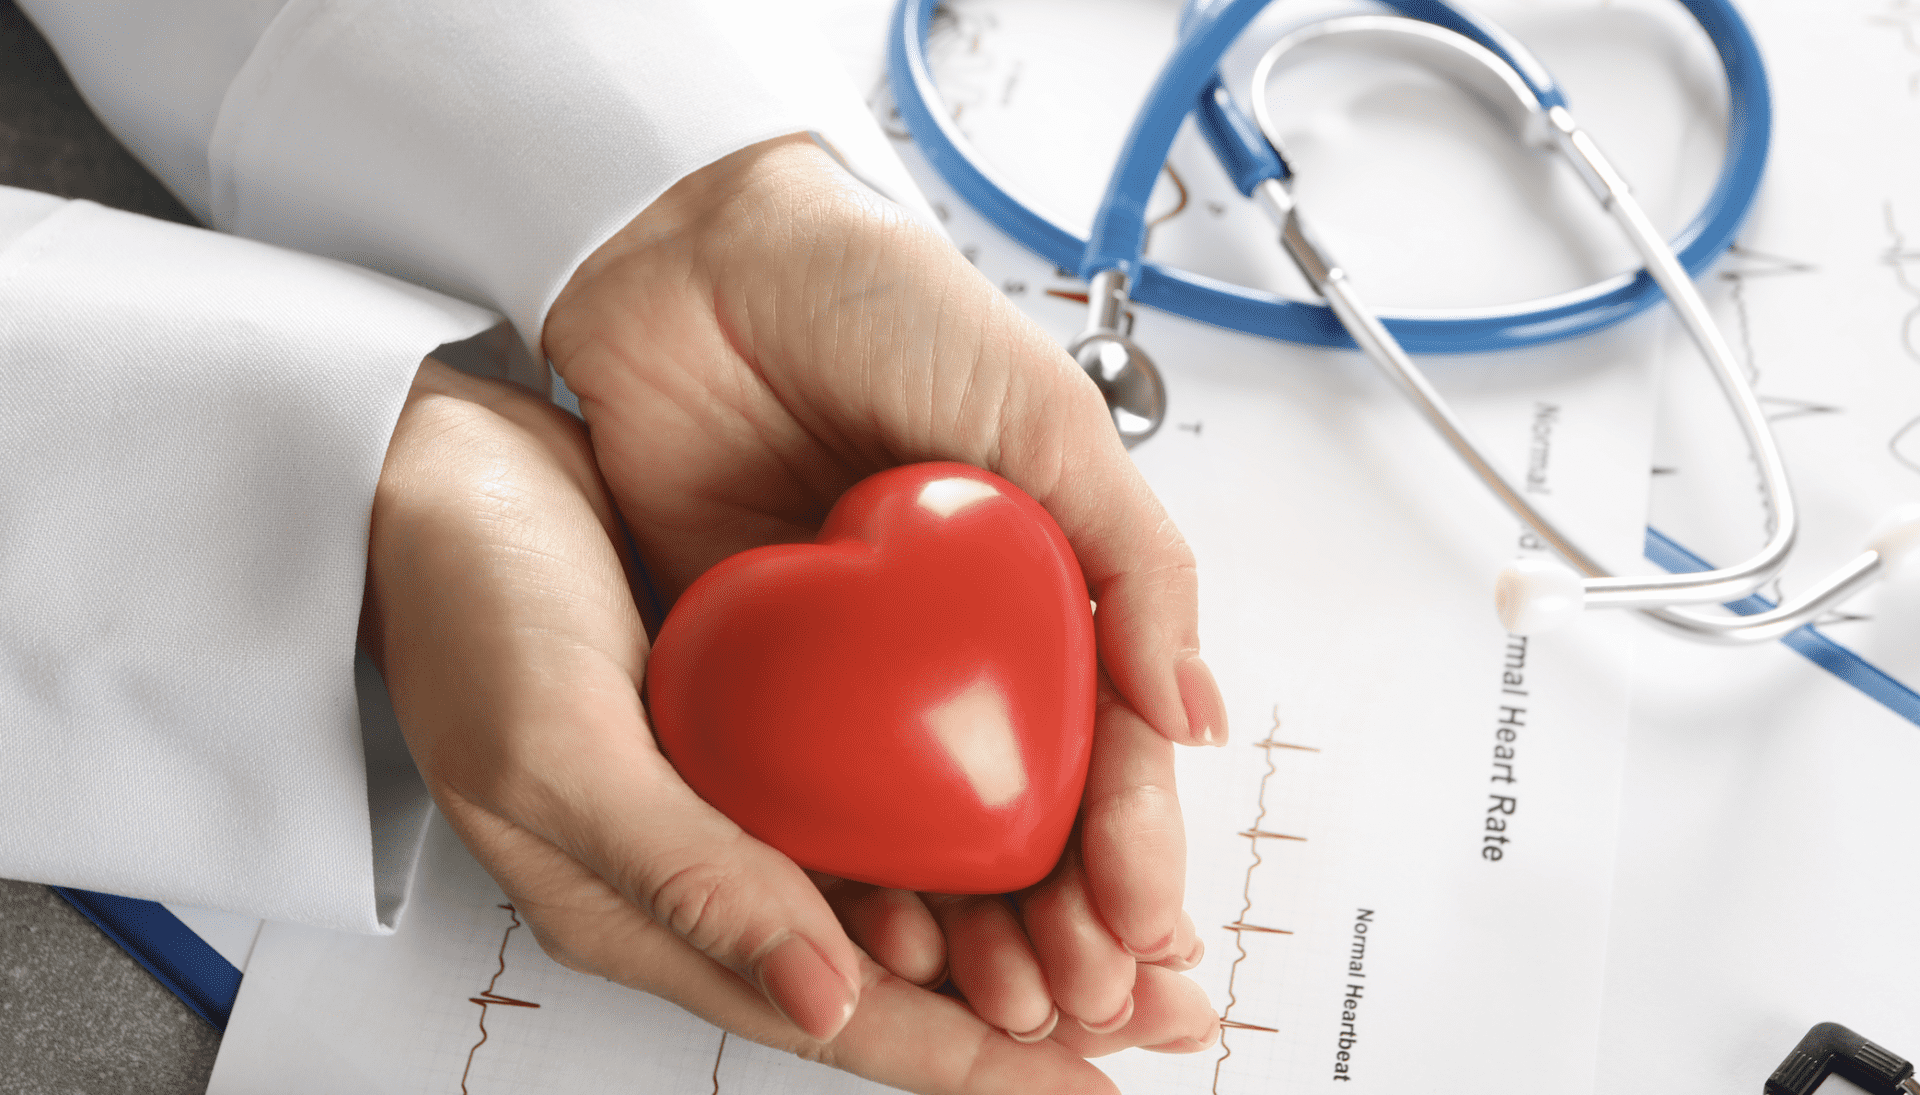 تسارع نبضات القلب (خفقان القلب) | 6 أسباب في نظام الحياة و 6 أسباب مرضية - النبضة الهاجرة